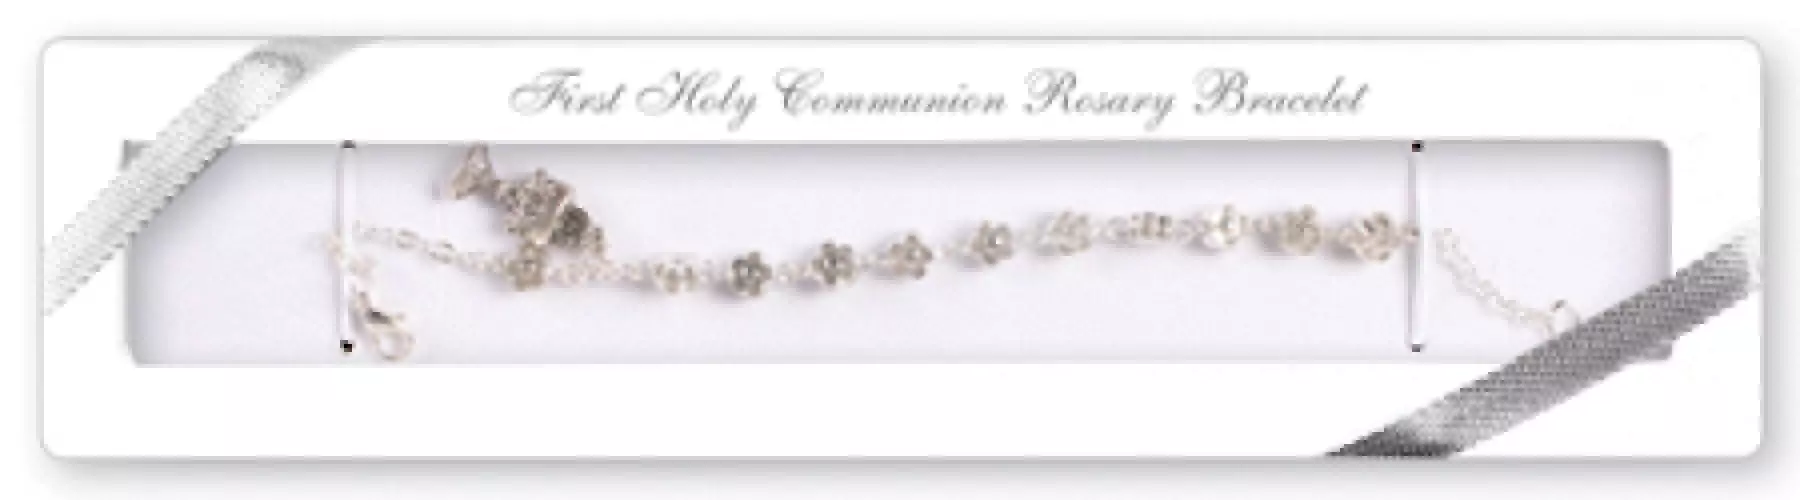 Metallised Communion Rosary Bracelet